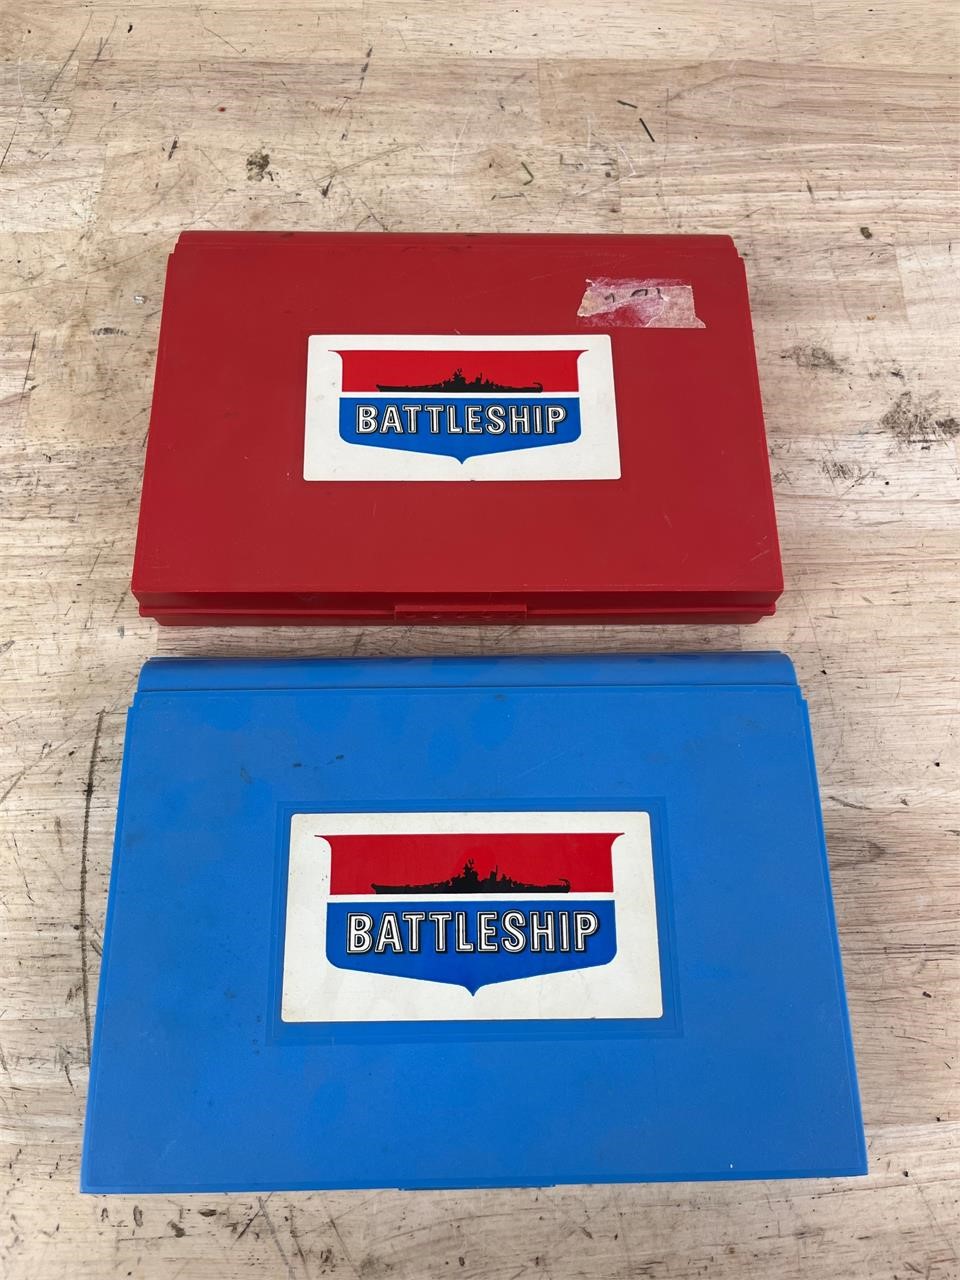 Battleship game